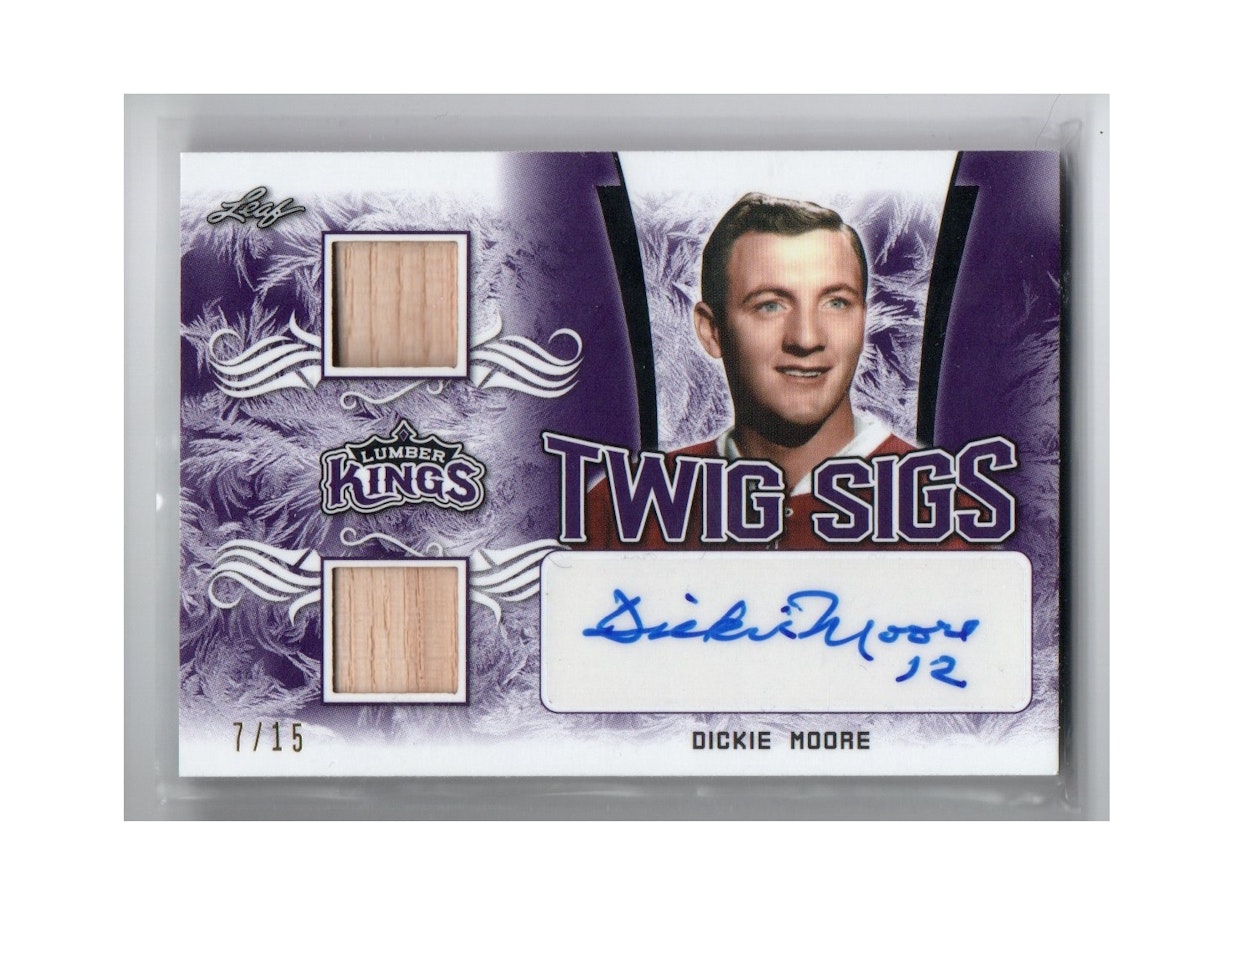 2019-20 Leaf Lumber Kings Twig Sigs Purple #TSDM1 Dickie Moore (300-X274-CANADIENS)